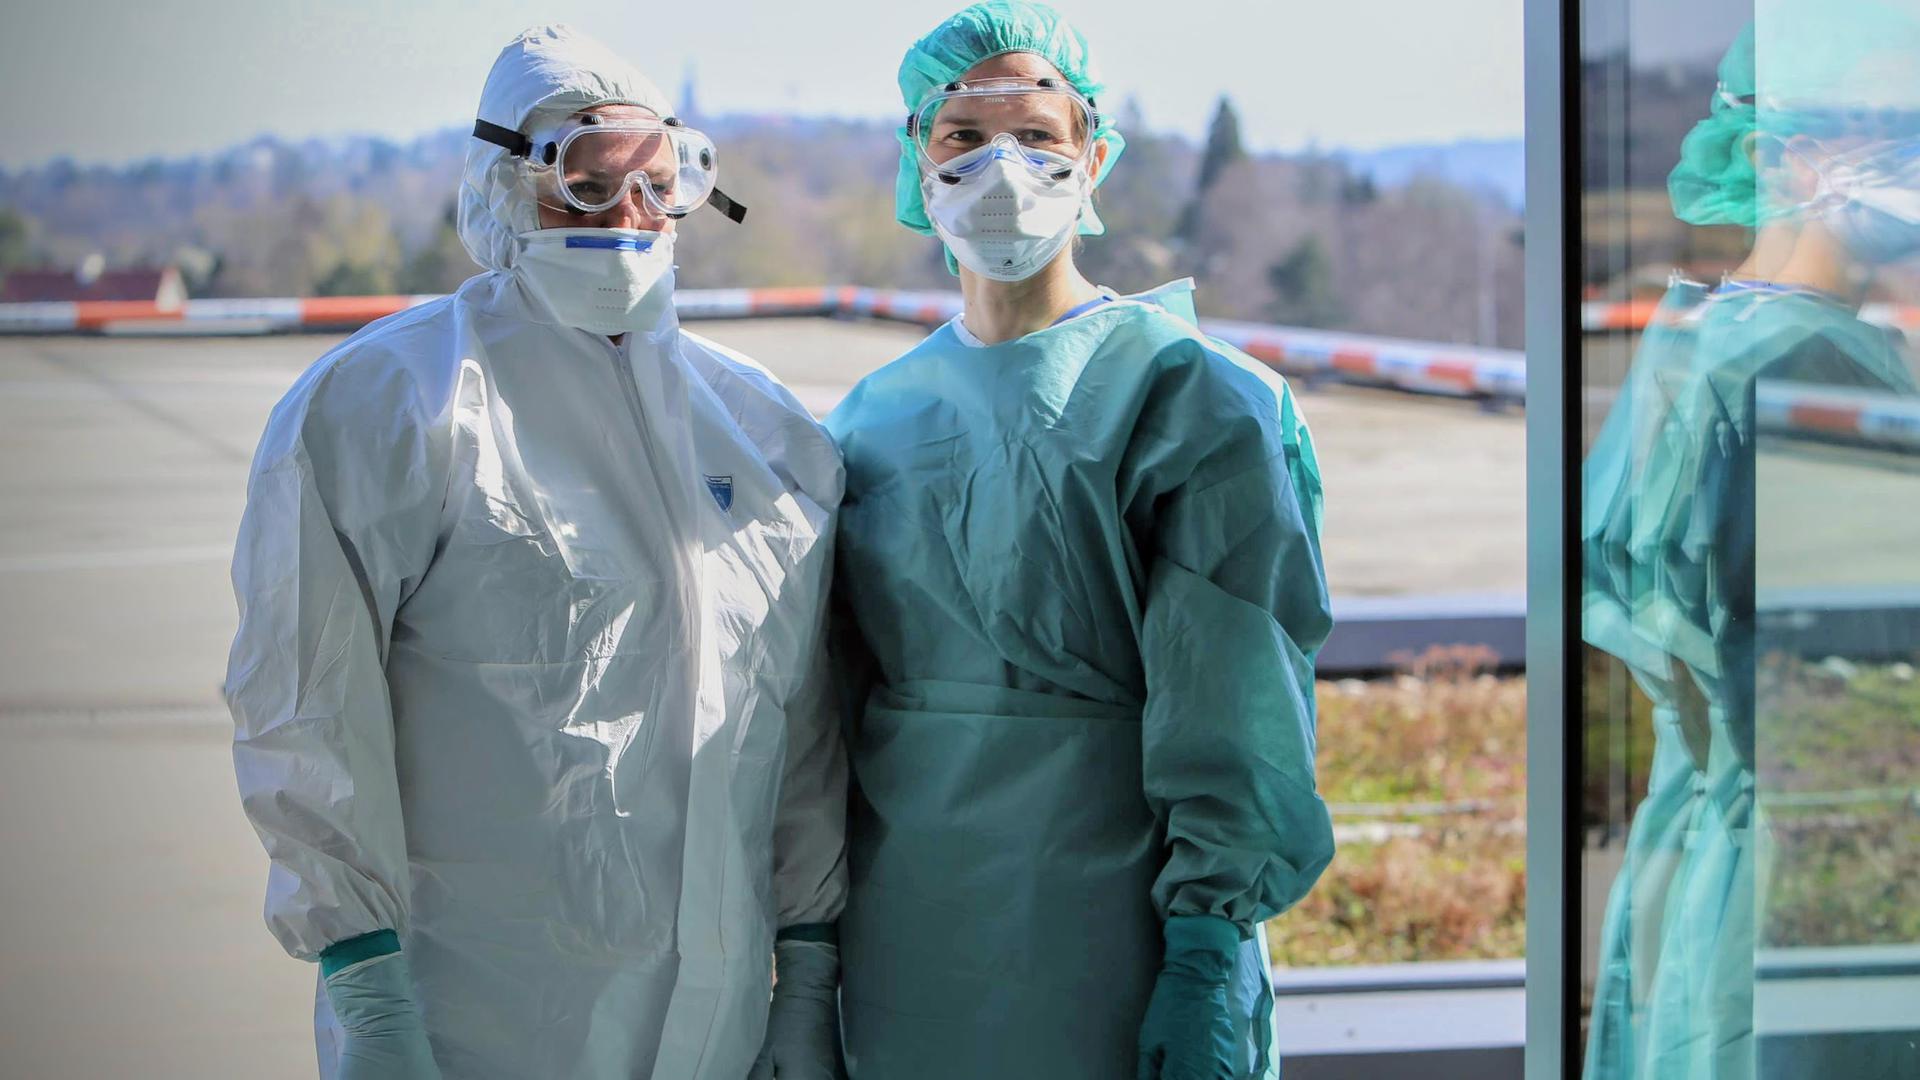 VORBEREITET: Mitarbeiter des Siloah-Klinikums in Pforzheim warten beim Hubschrauber-Landeplatz auf das Eintreffen eines Covid-Intensivpatienten.